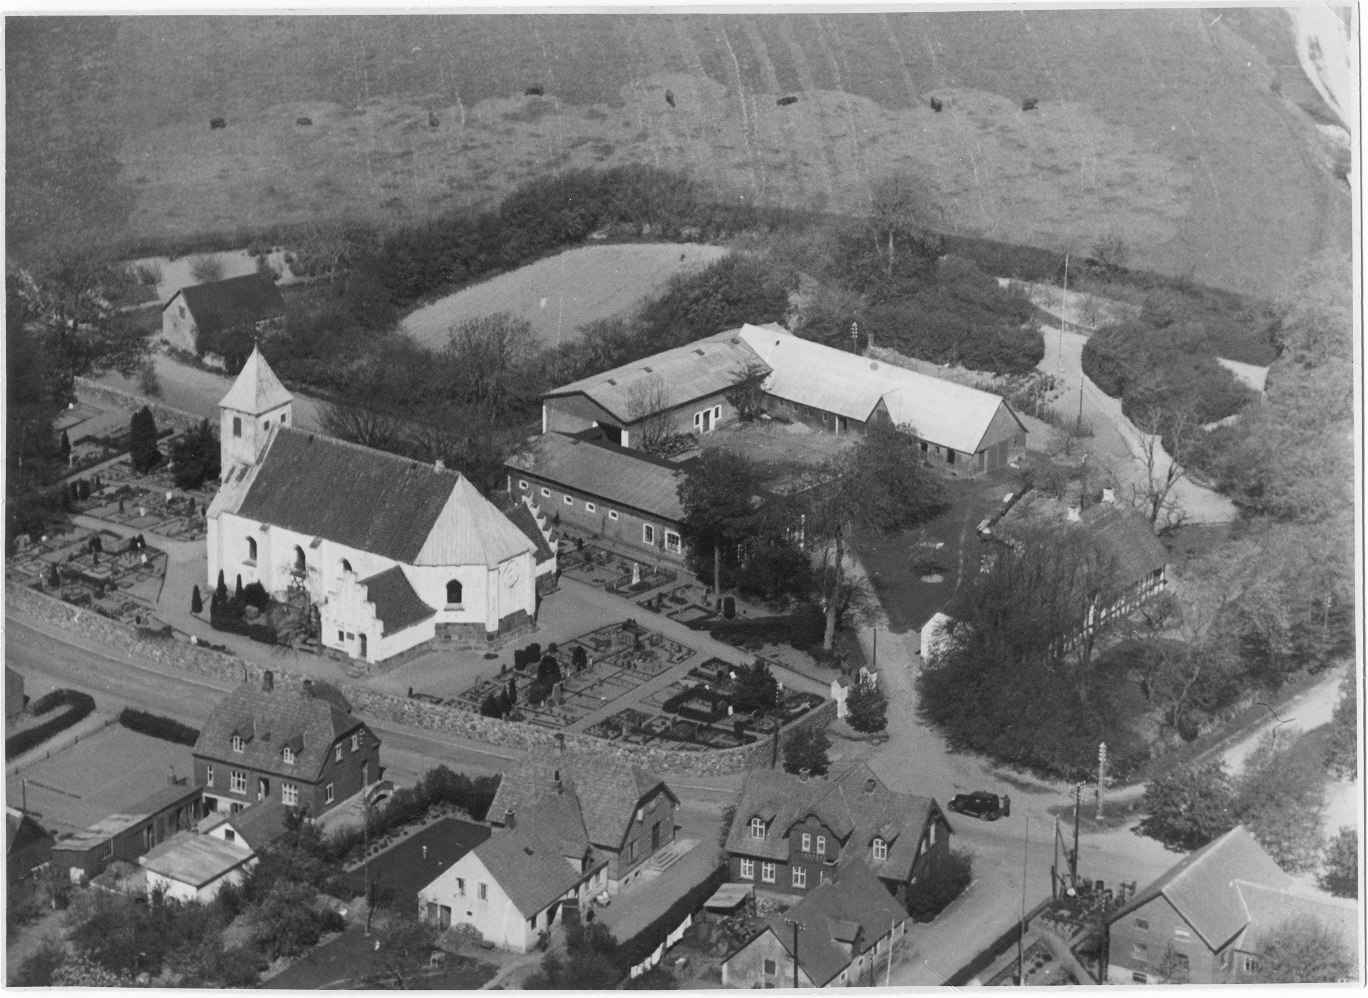 Ballevej år 1900, skolen er til højre. Tirstrup er sognekommune sammen med Fuglslev sogn og byen udvikler sig stille og roligt. Der kommer el til byen i 1920.